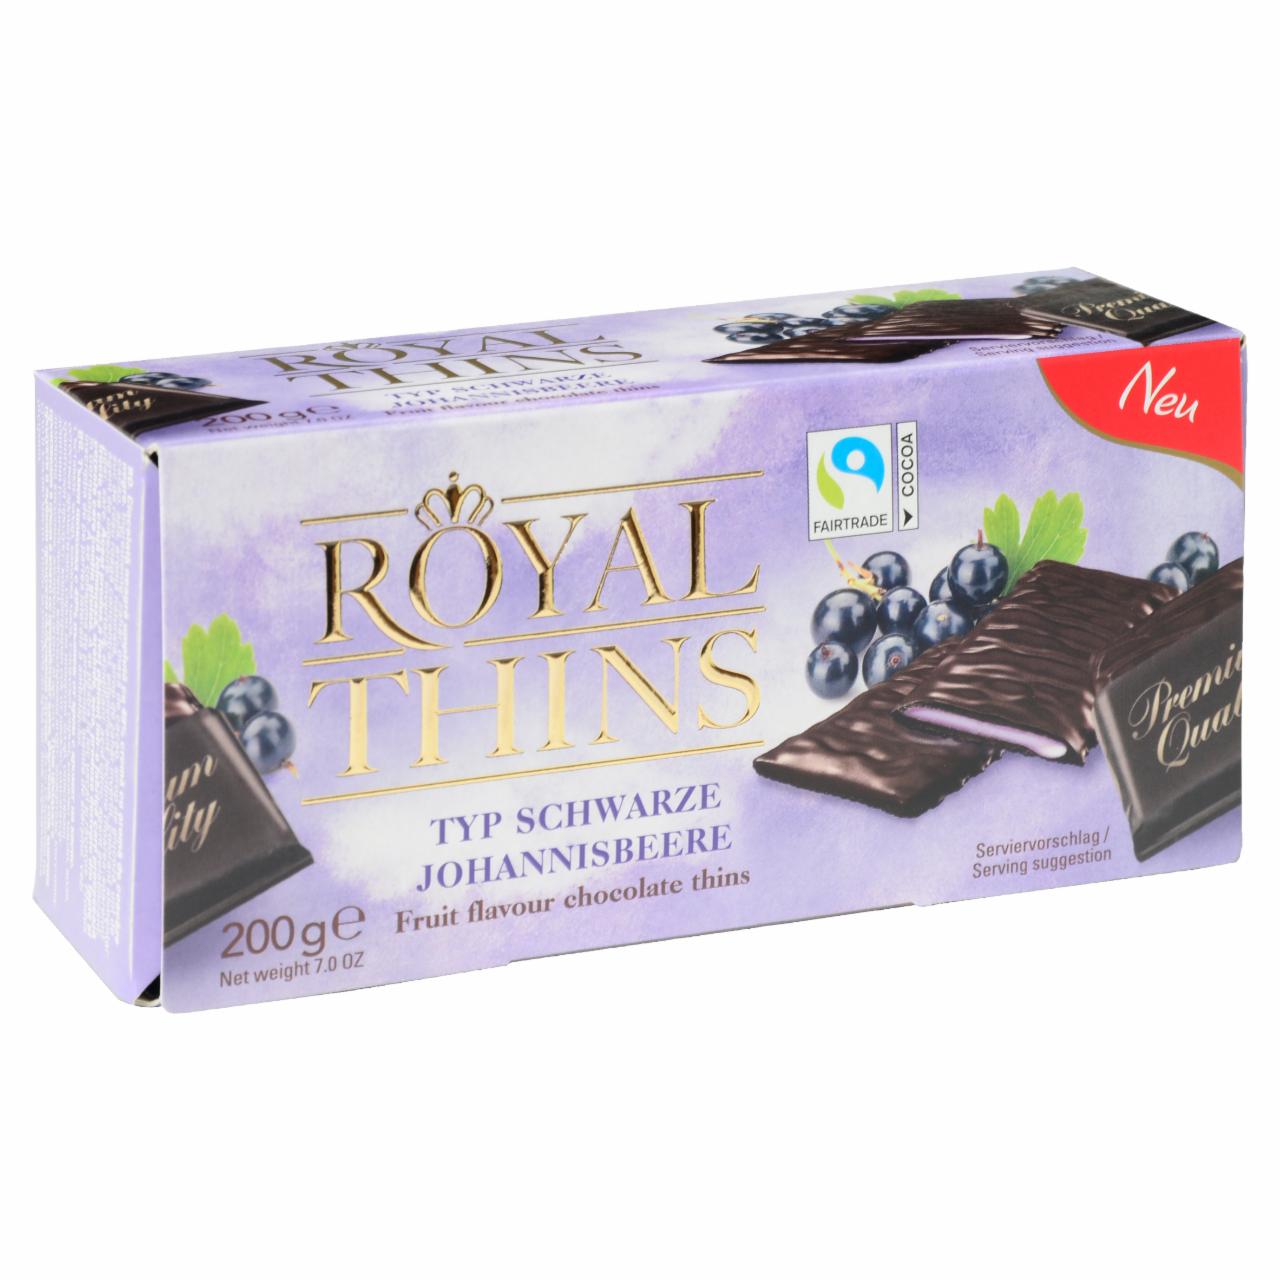 Képek - Halloren Royal Thins étcsokoládé feketeribizli ízű fondant krémmel töltve 200 g